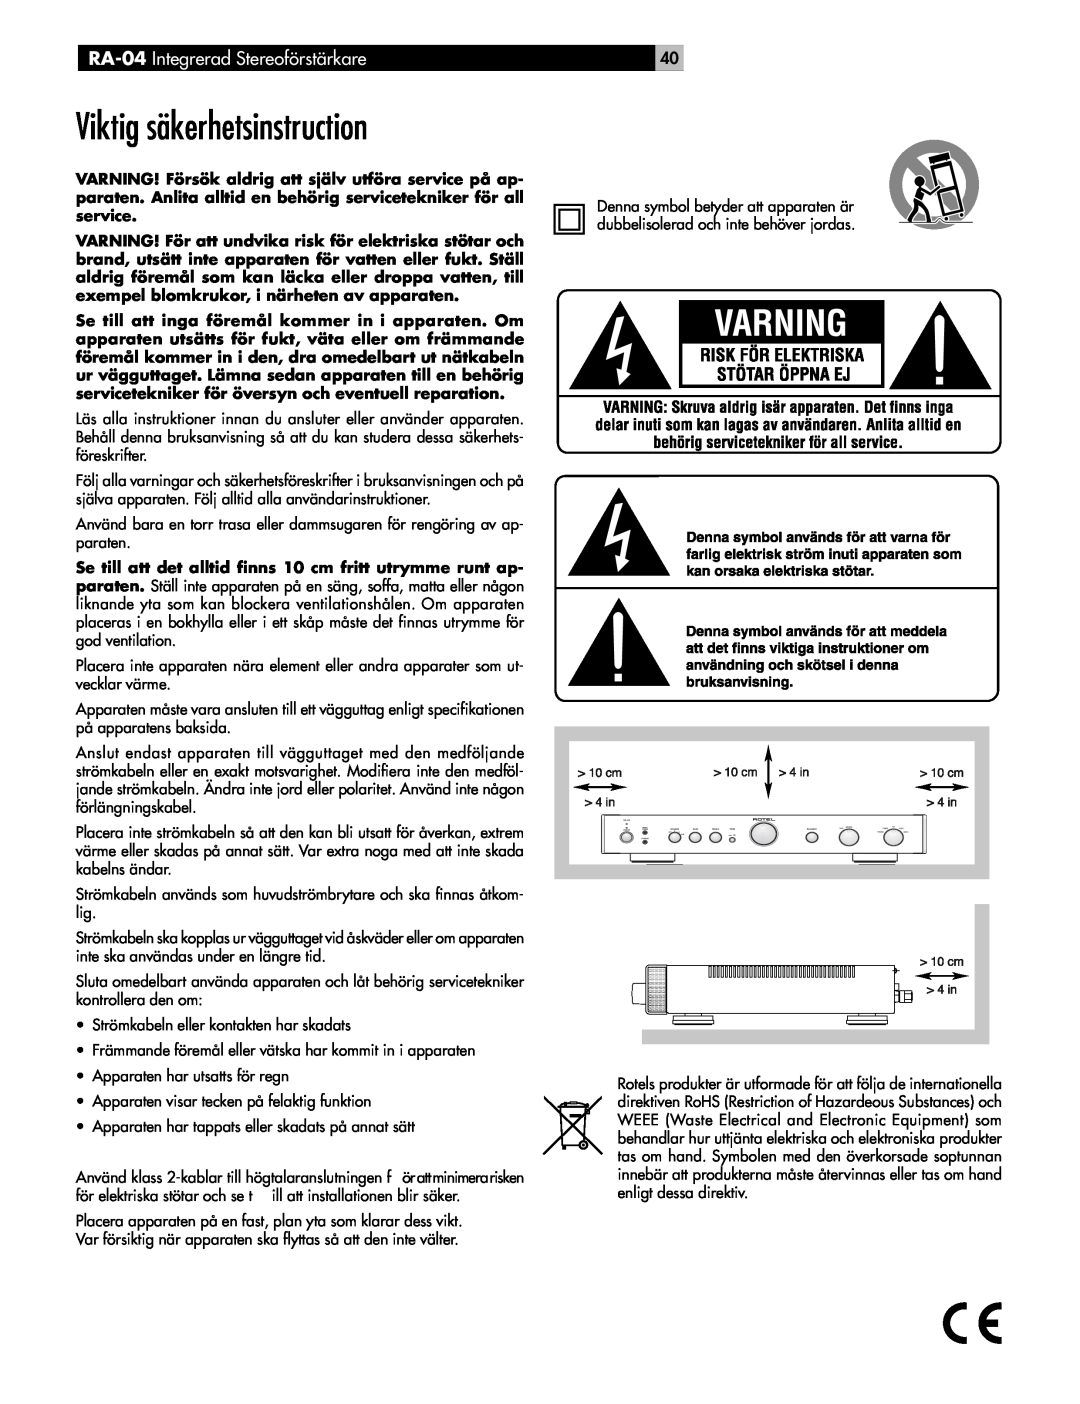 Rotel owner manual Viktig säkerhetsinstruction, RA-04 Integrerad Stereoförstärkare 